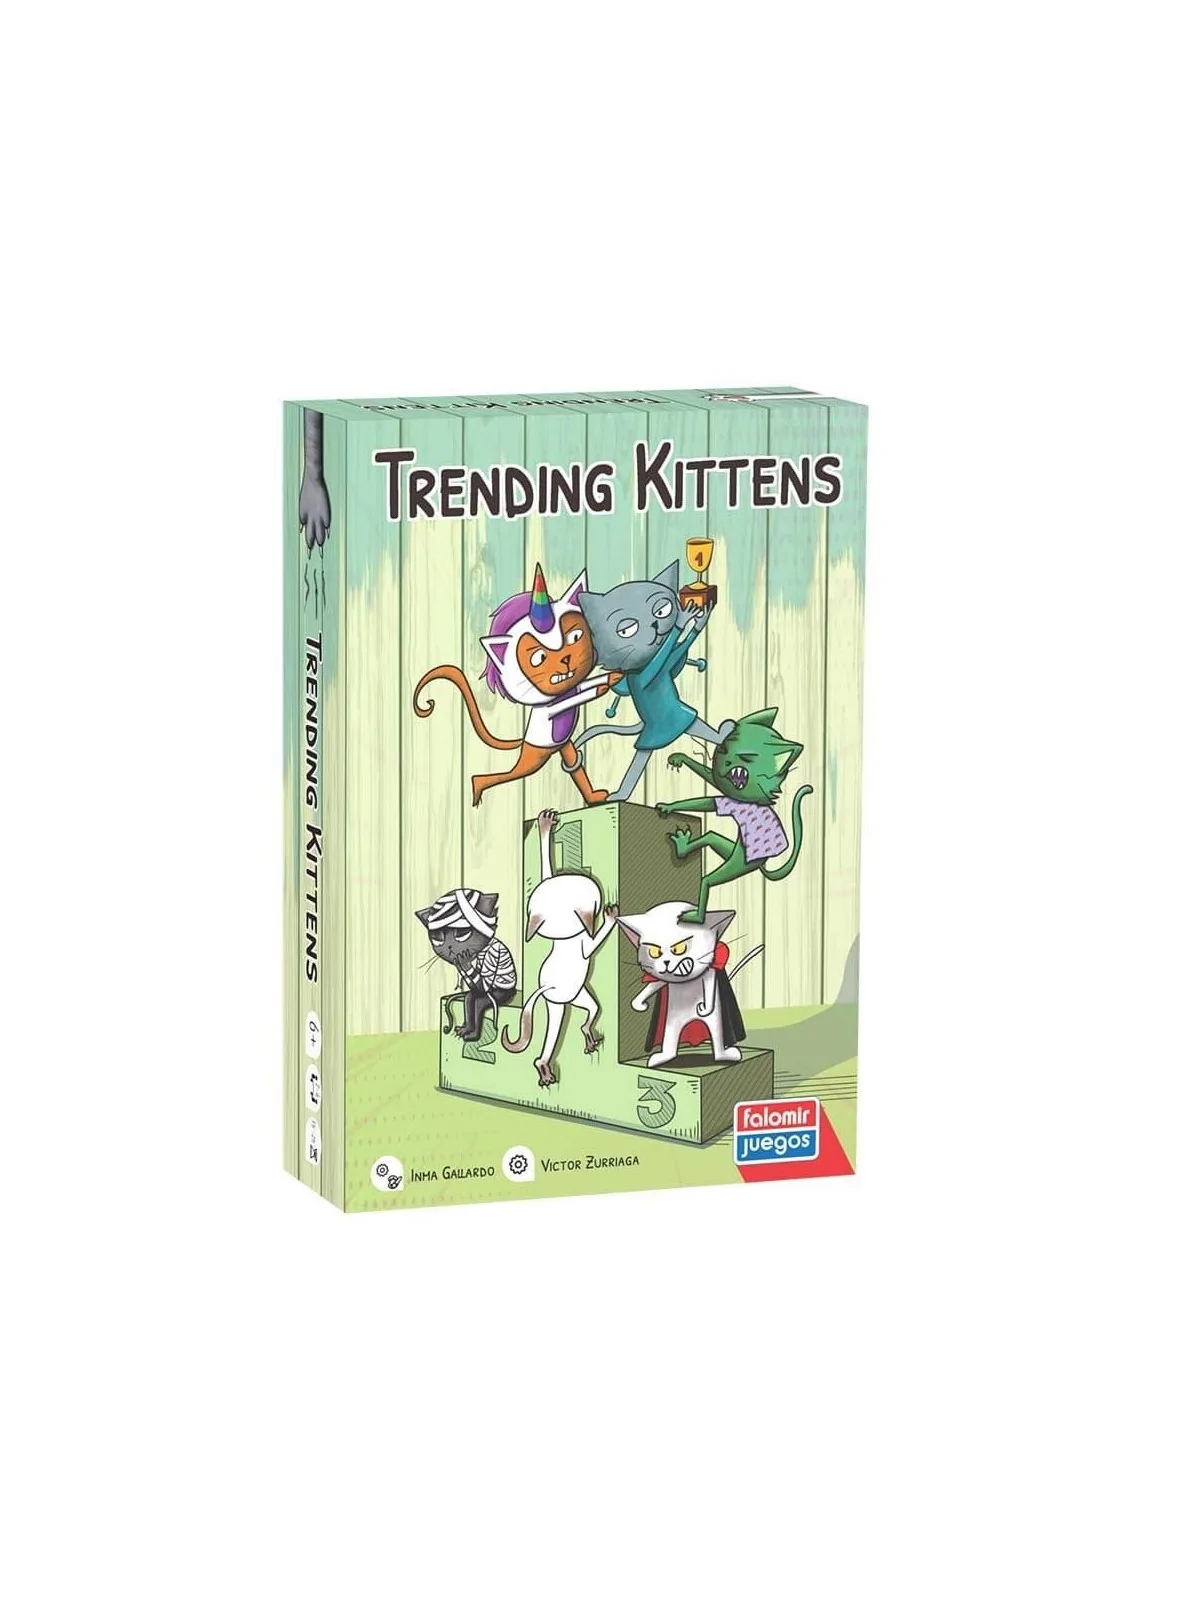 Comprar Trending Kittens barato al mejor precio 17,95 € de Falomir Jue